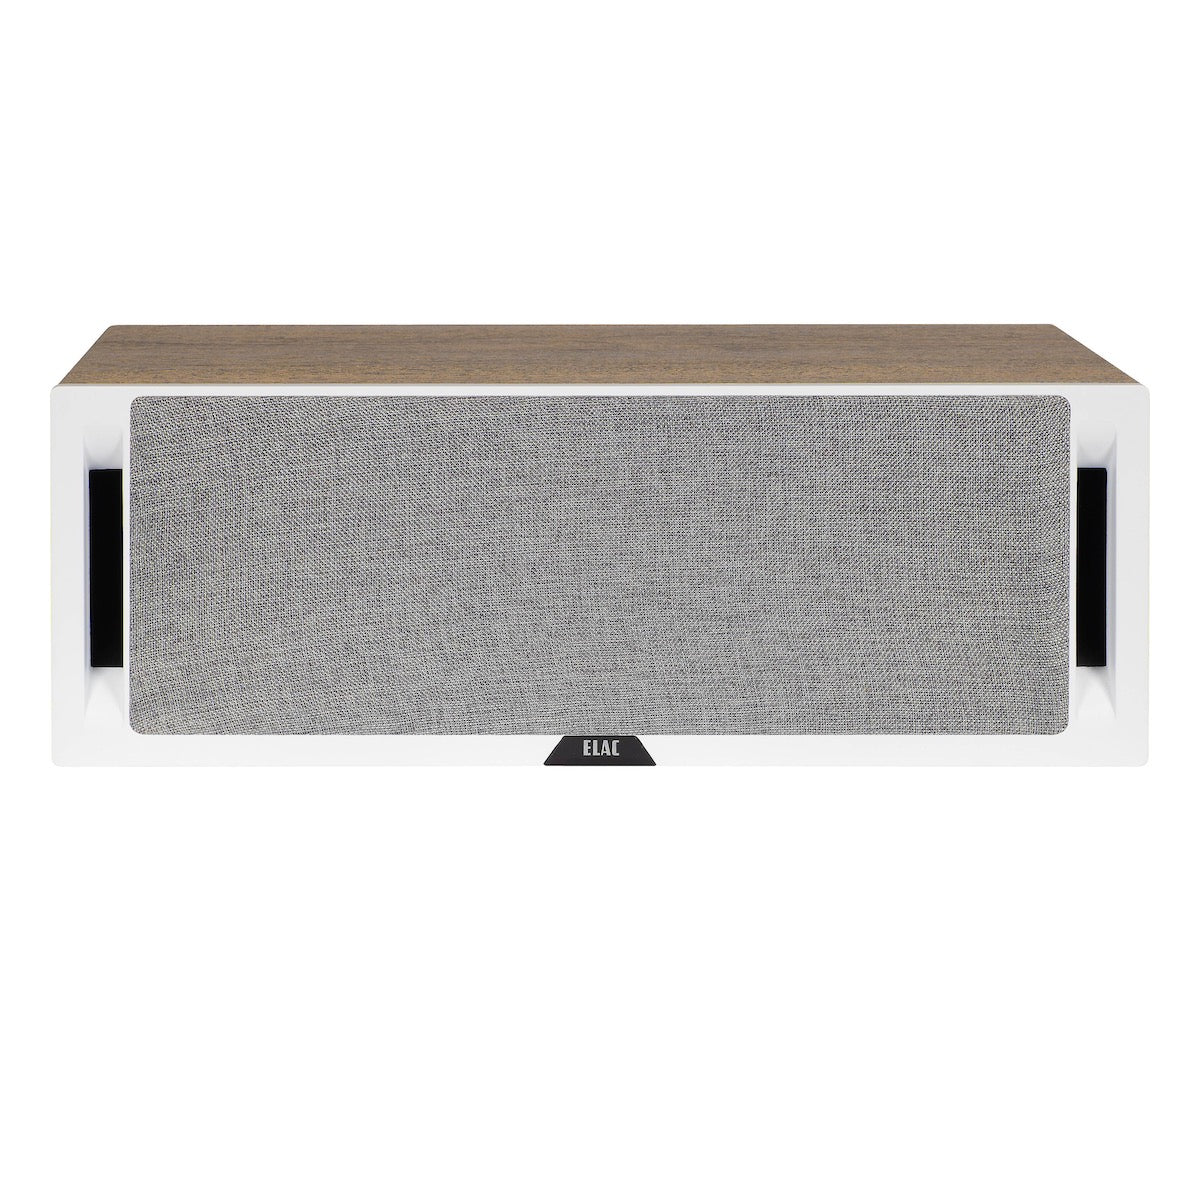 ELAC Debut Reference DCR52 - Centre Speaker - AVStore